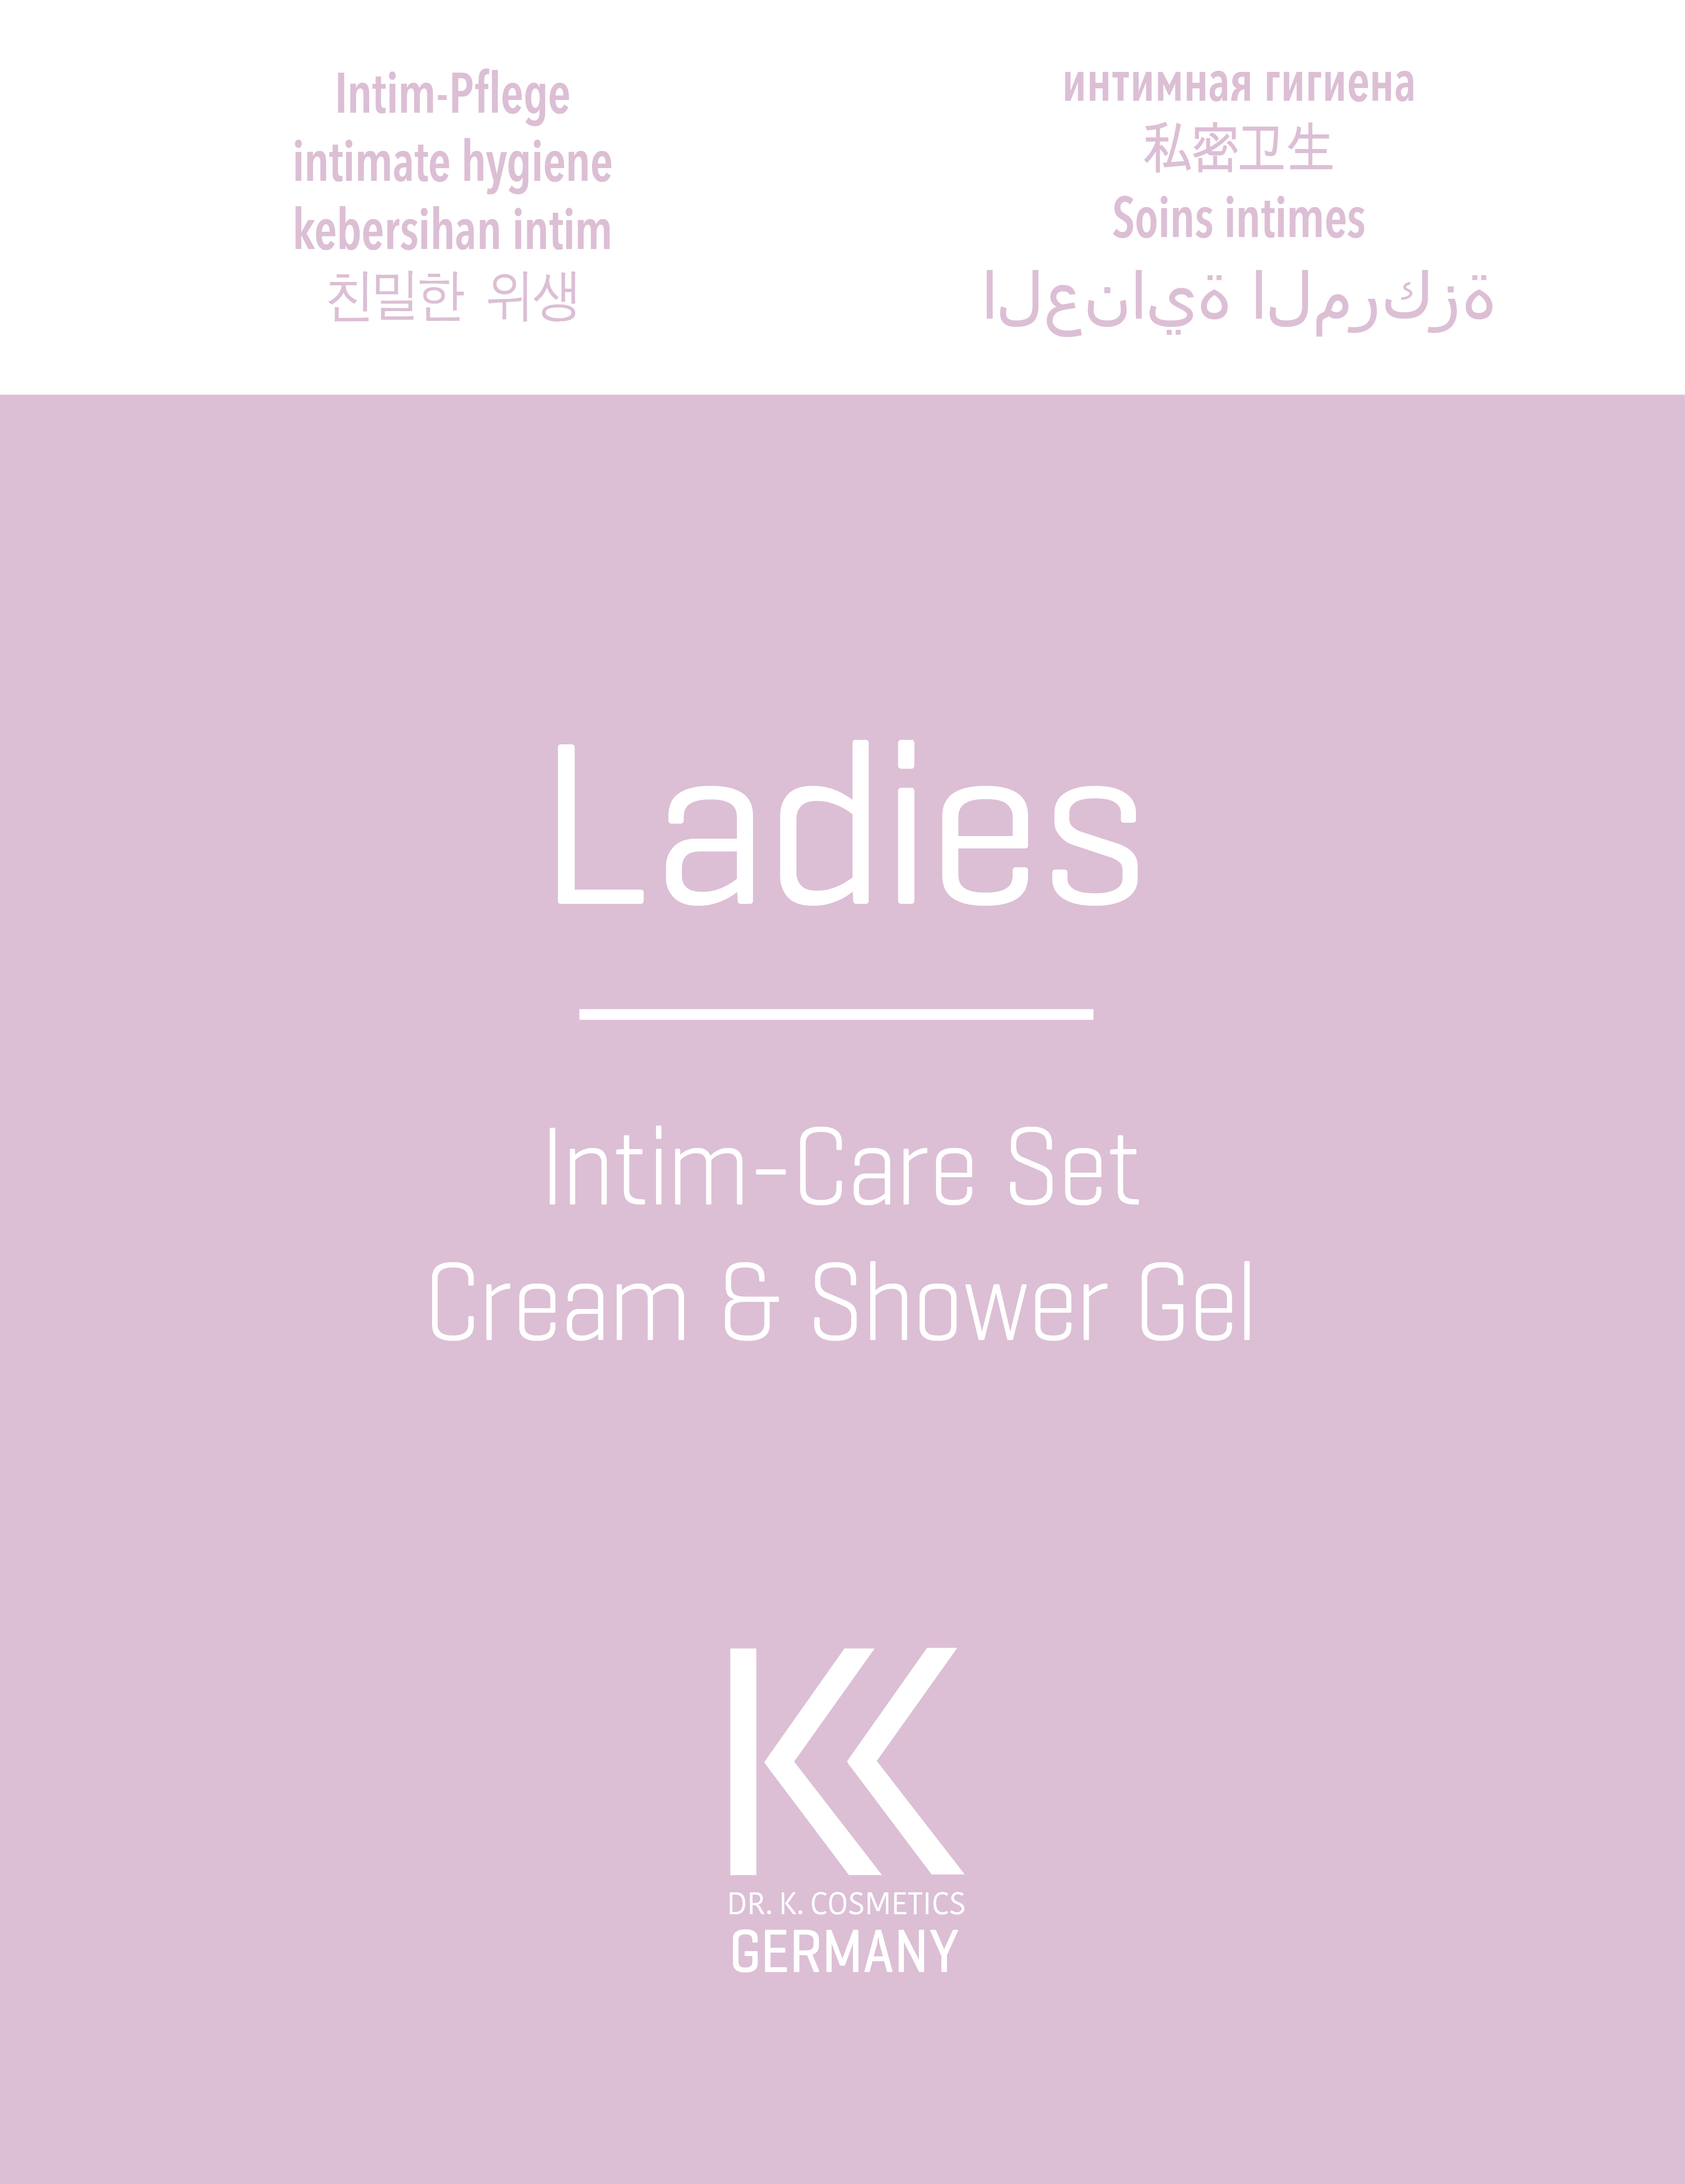 Ladies Intim-Care Set - Cream & Shower Gel